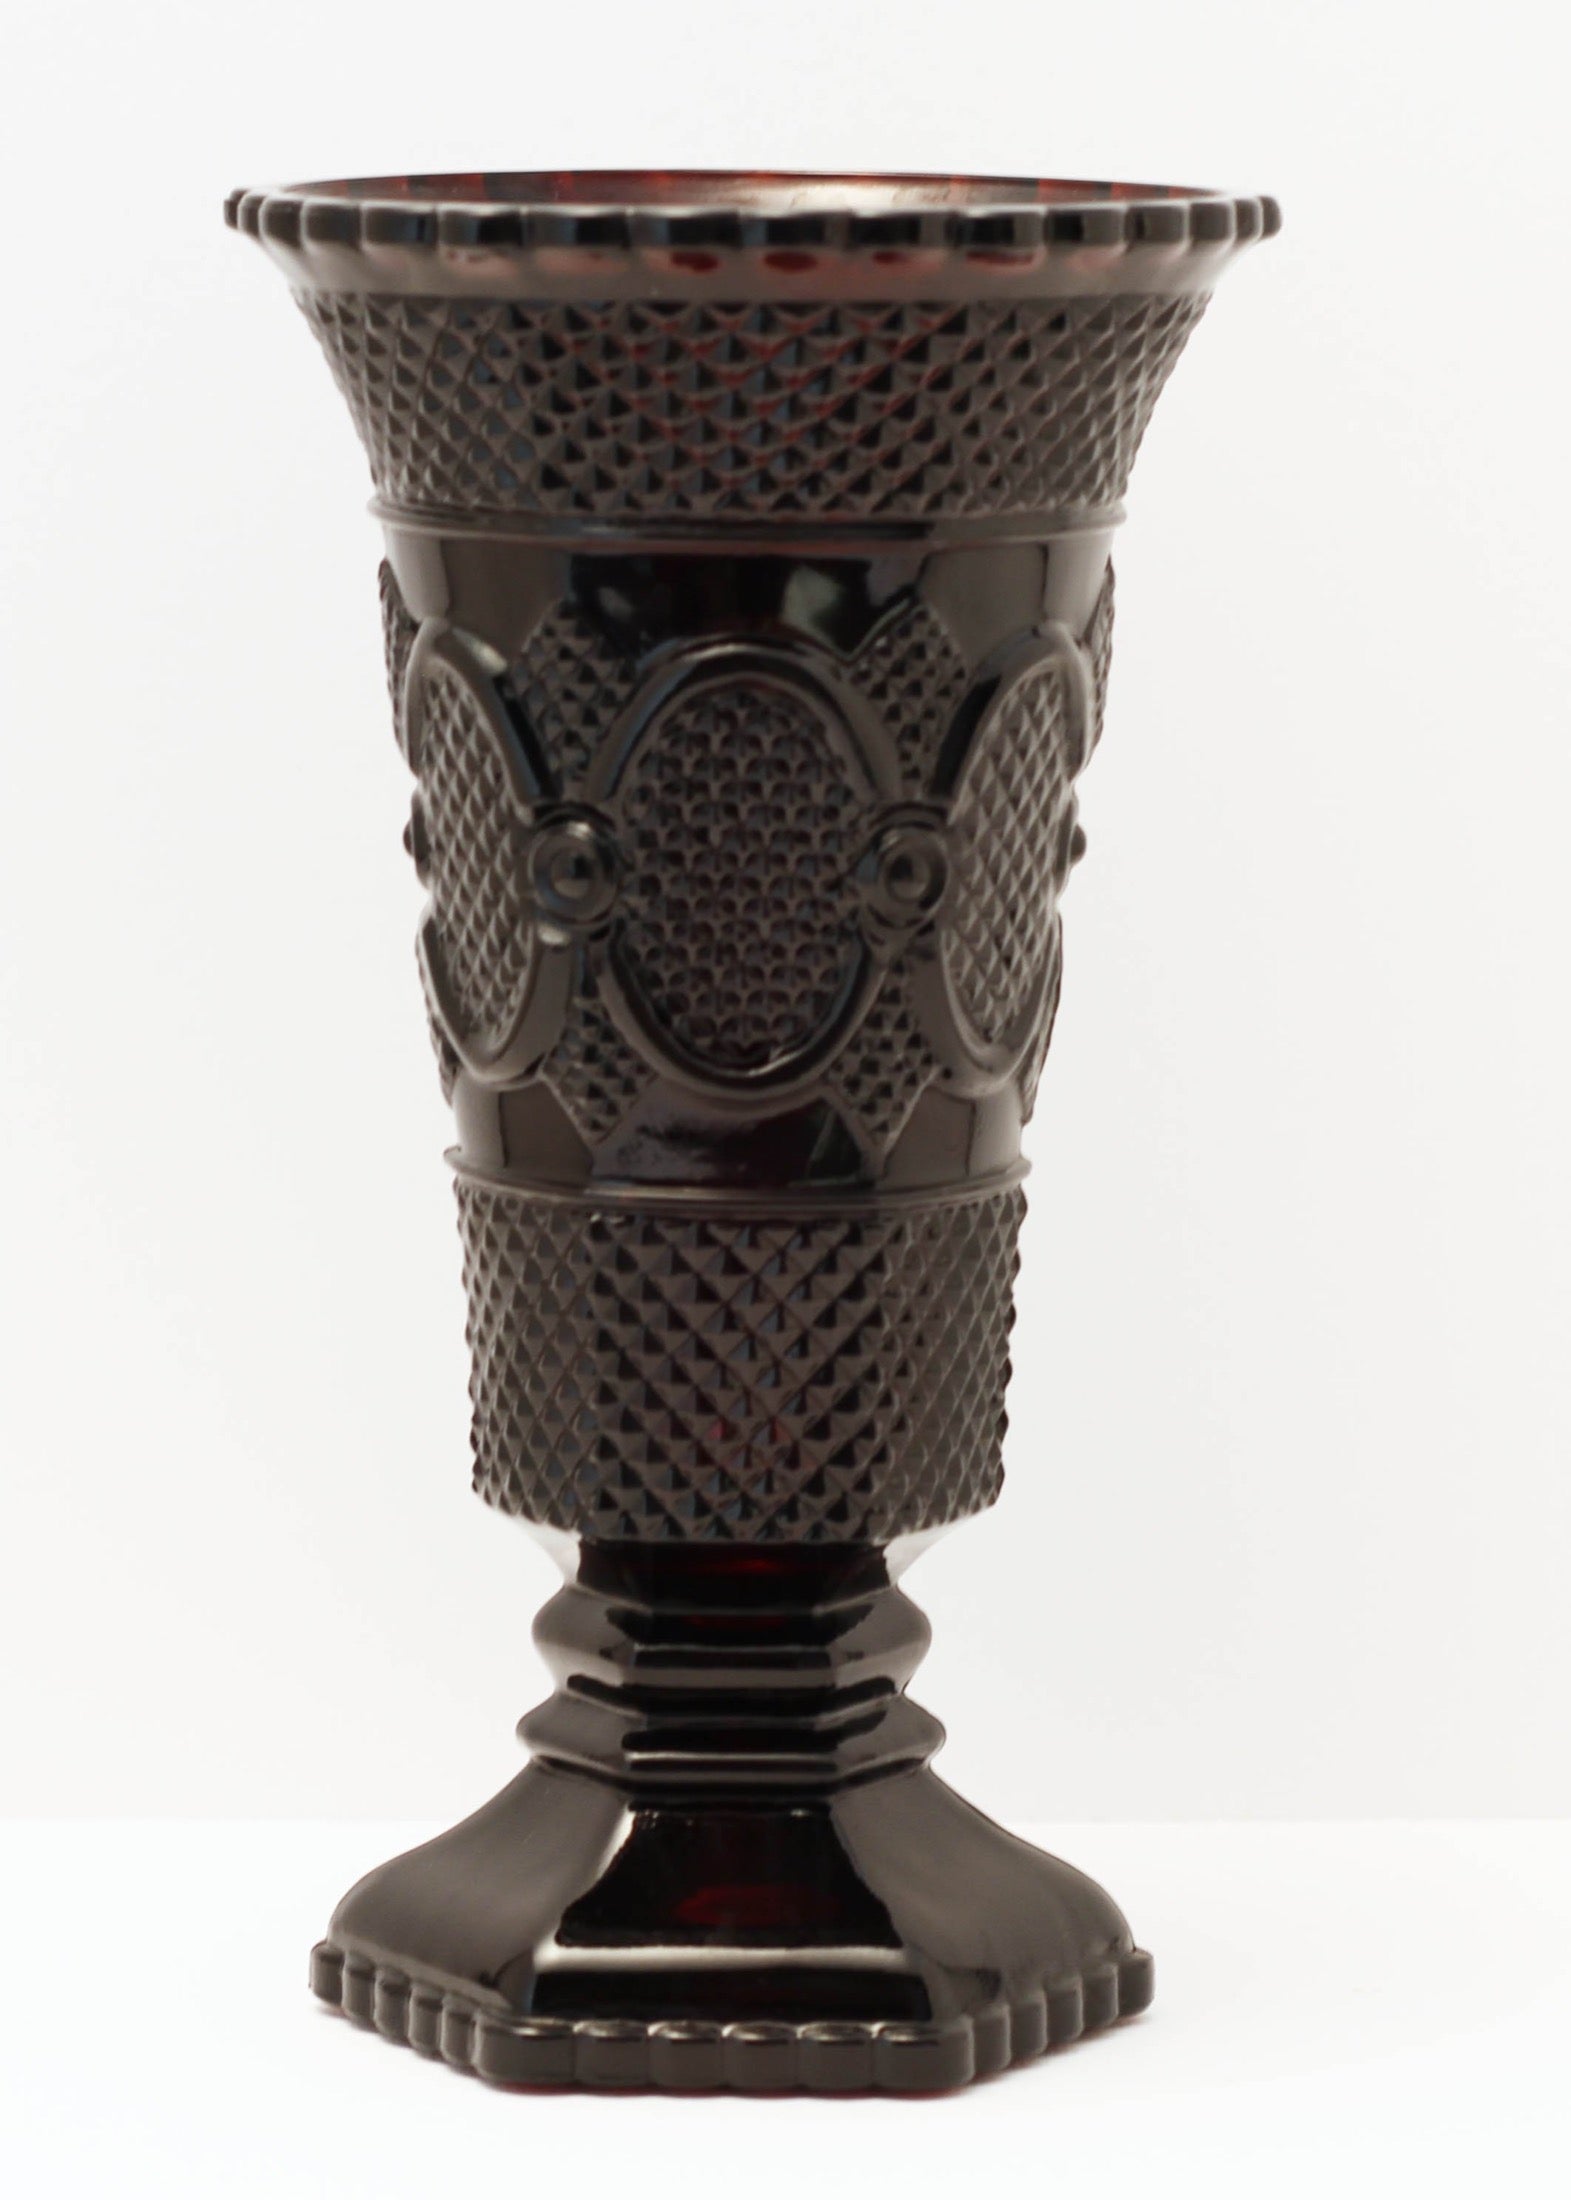 CAPE COD 1876 COLLECTION By Avon Pedestal Flower Vase